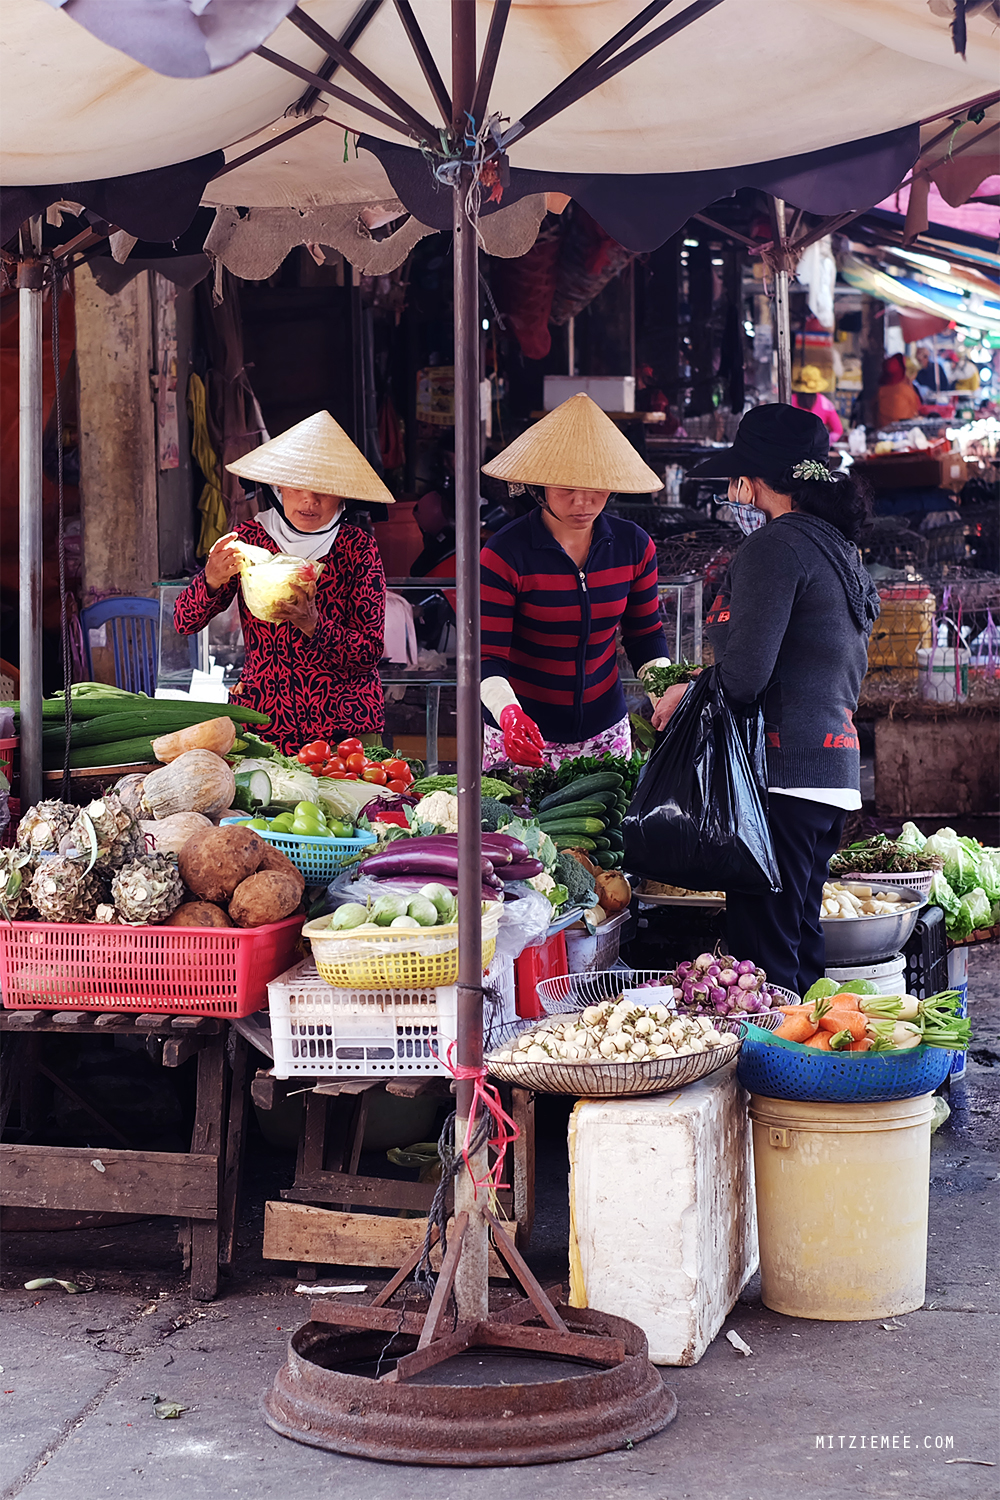 Pleiku Central Market, Vietnam